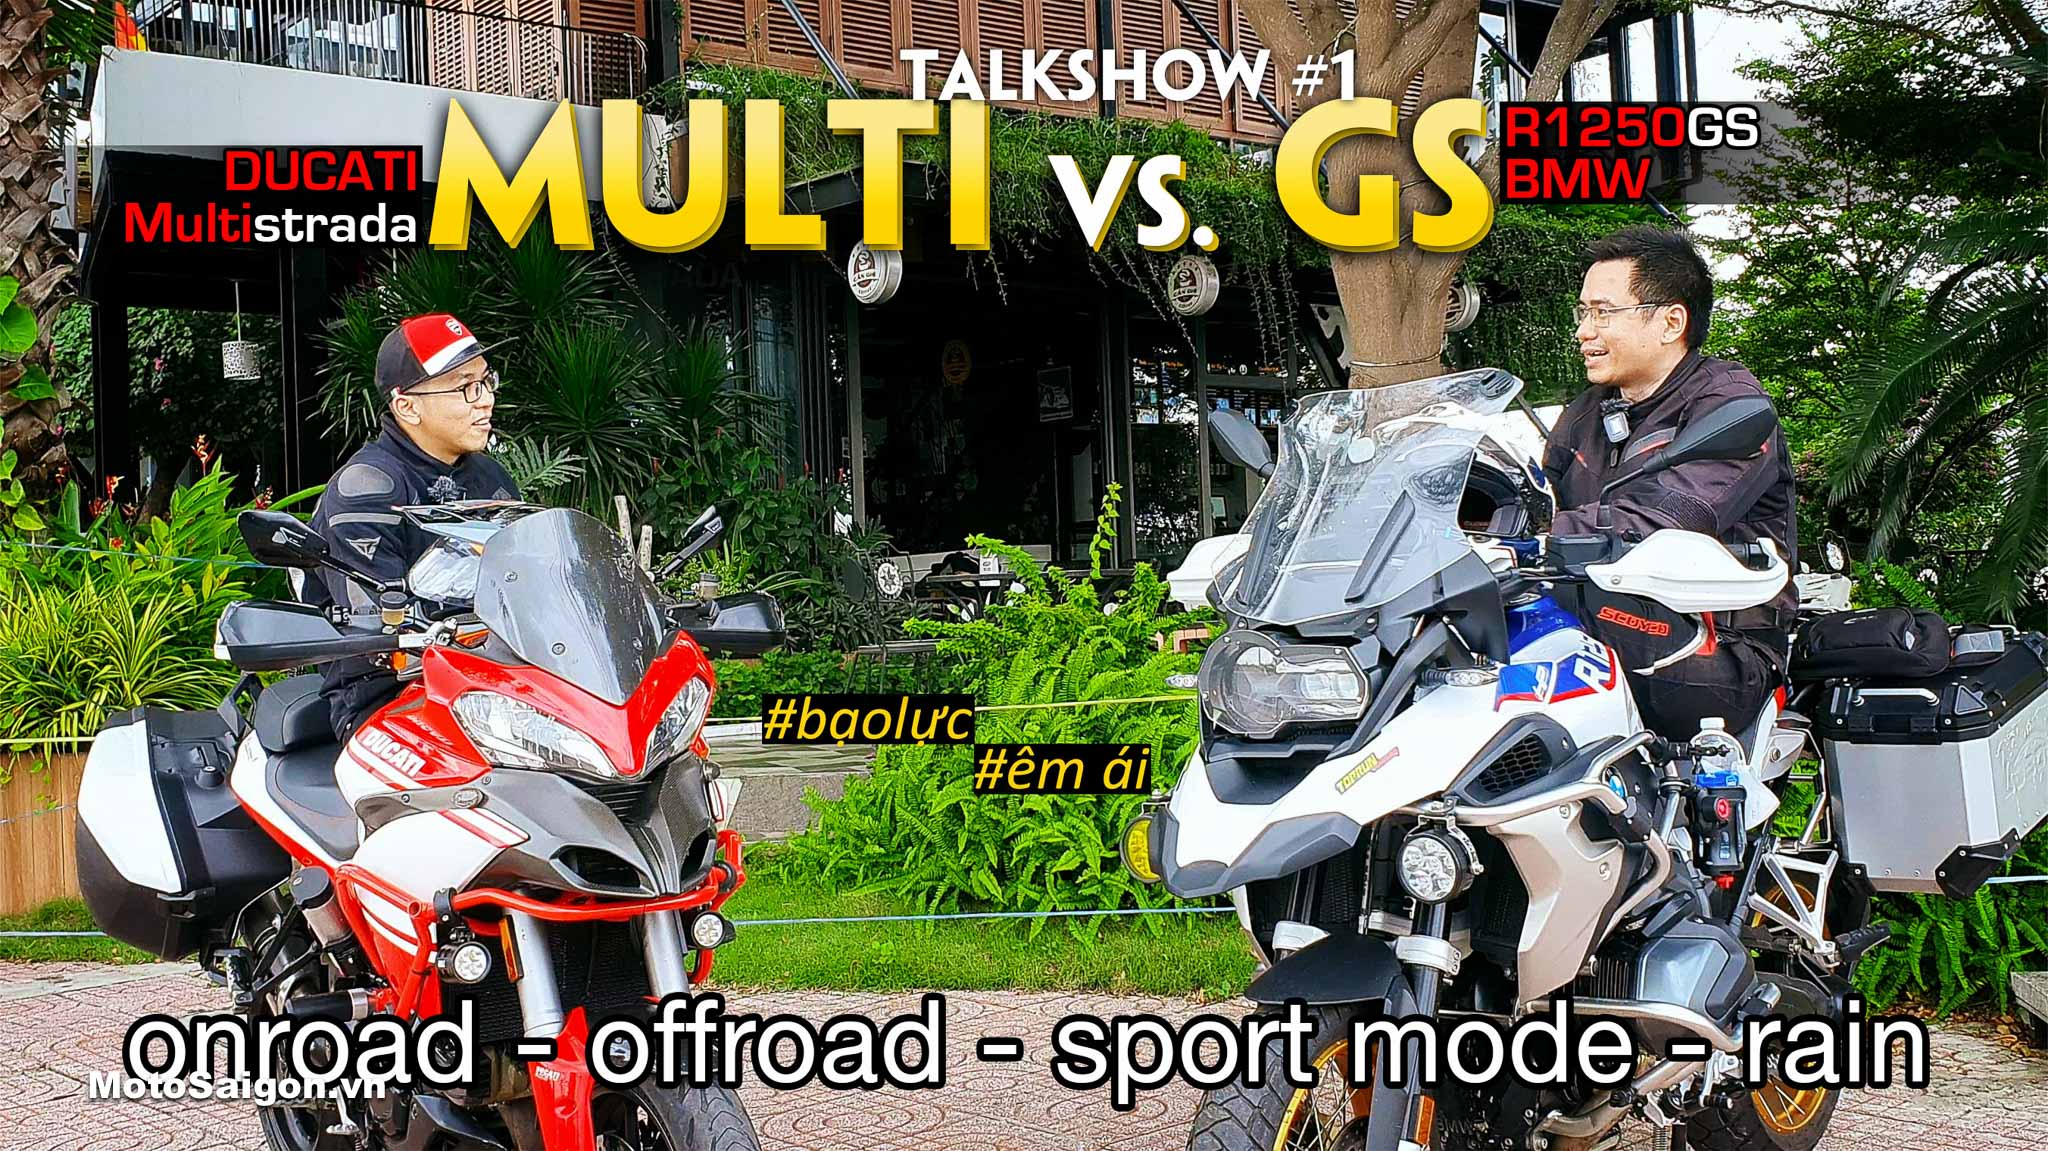 Đánh giá xe Ducati Multistrada (anh Lê Thiết Vũ) so sánh với BMW R1250 GS (CTV Nguyễn Thế Dương) sau tour Cần Giờ